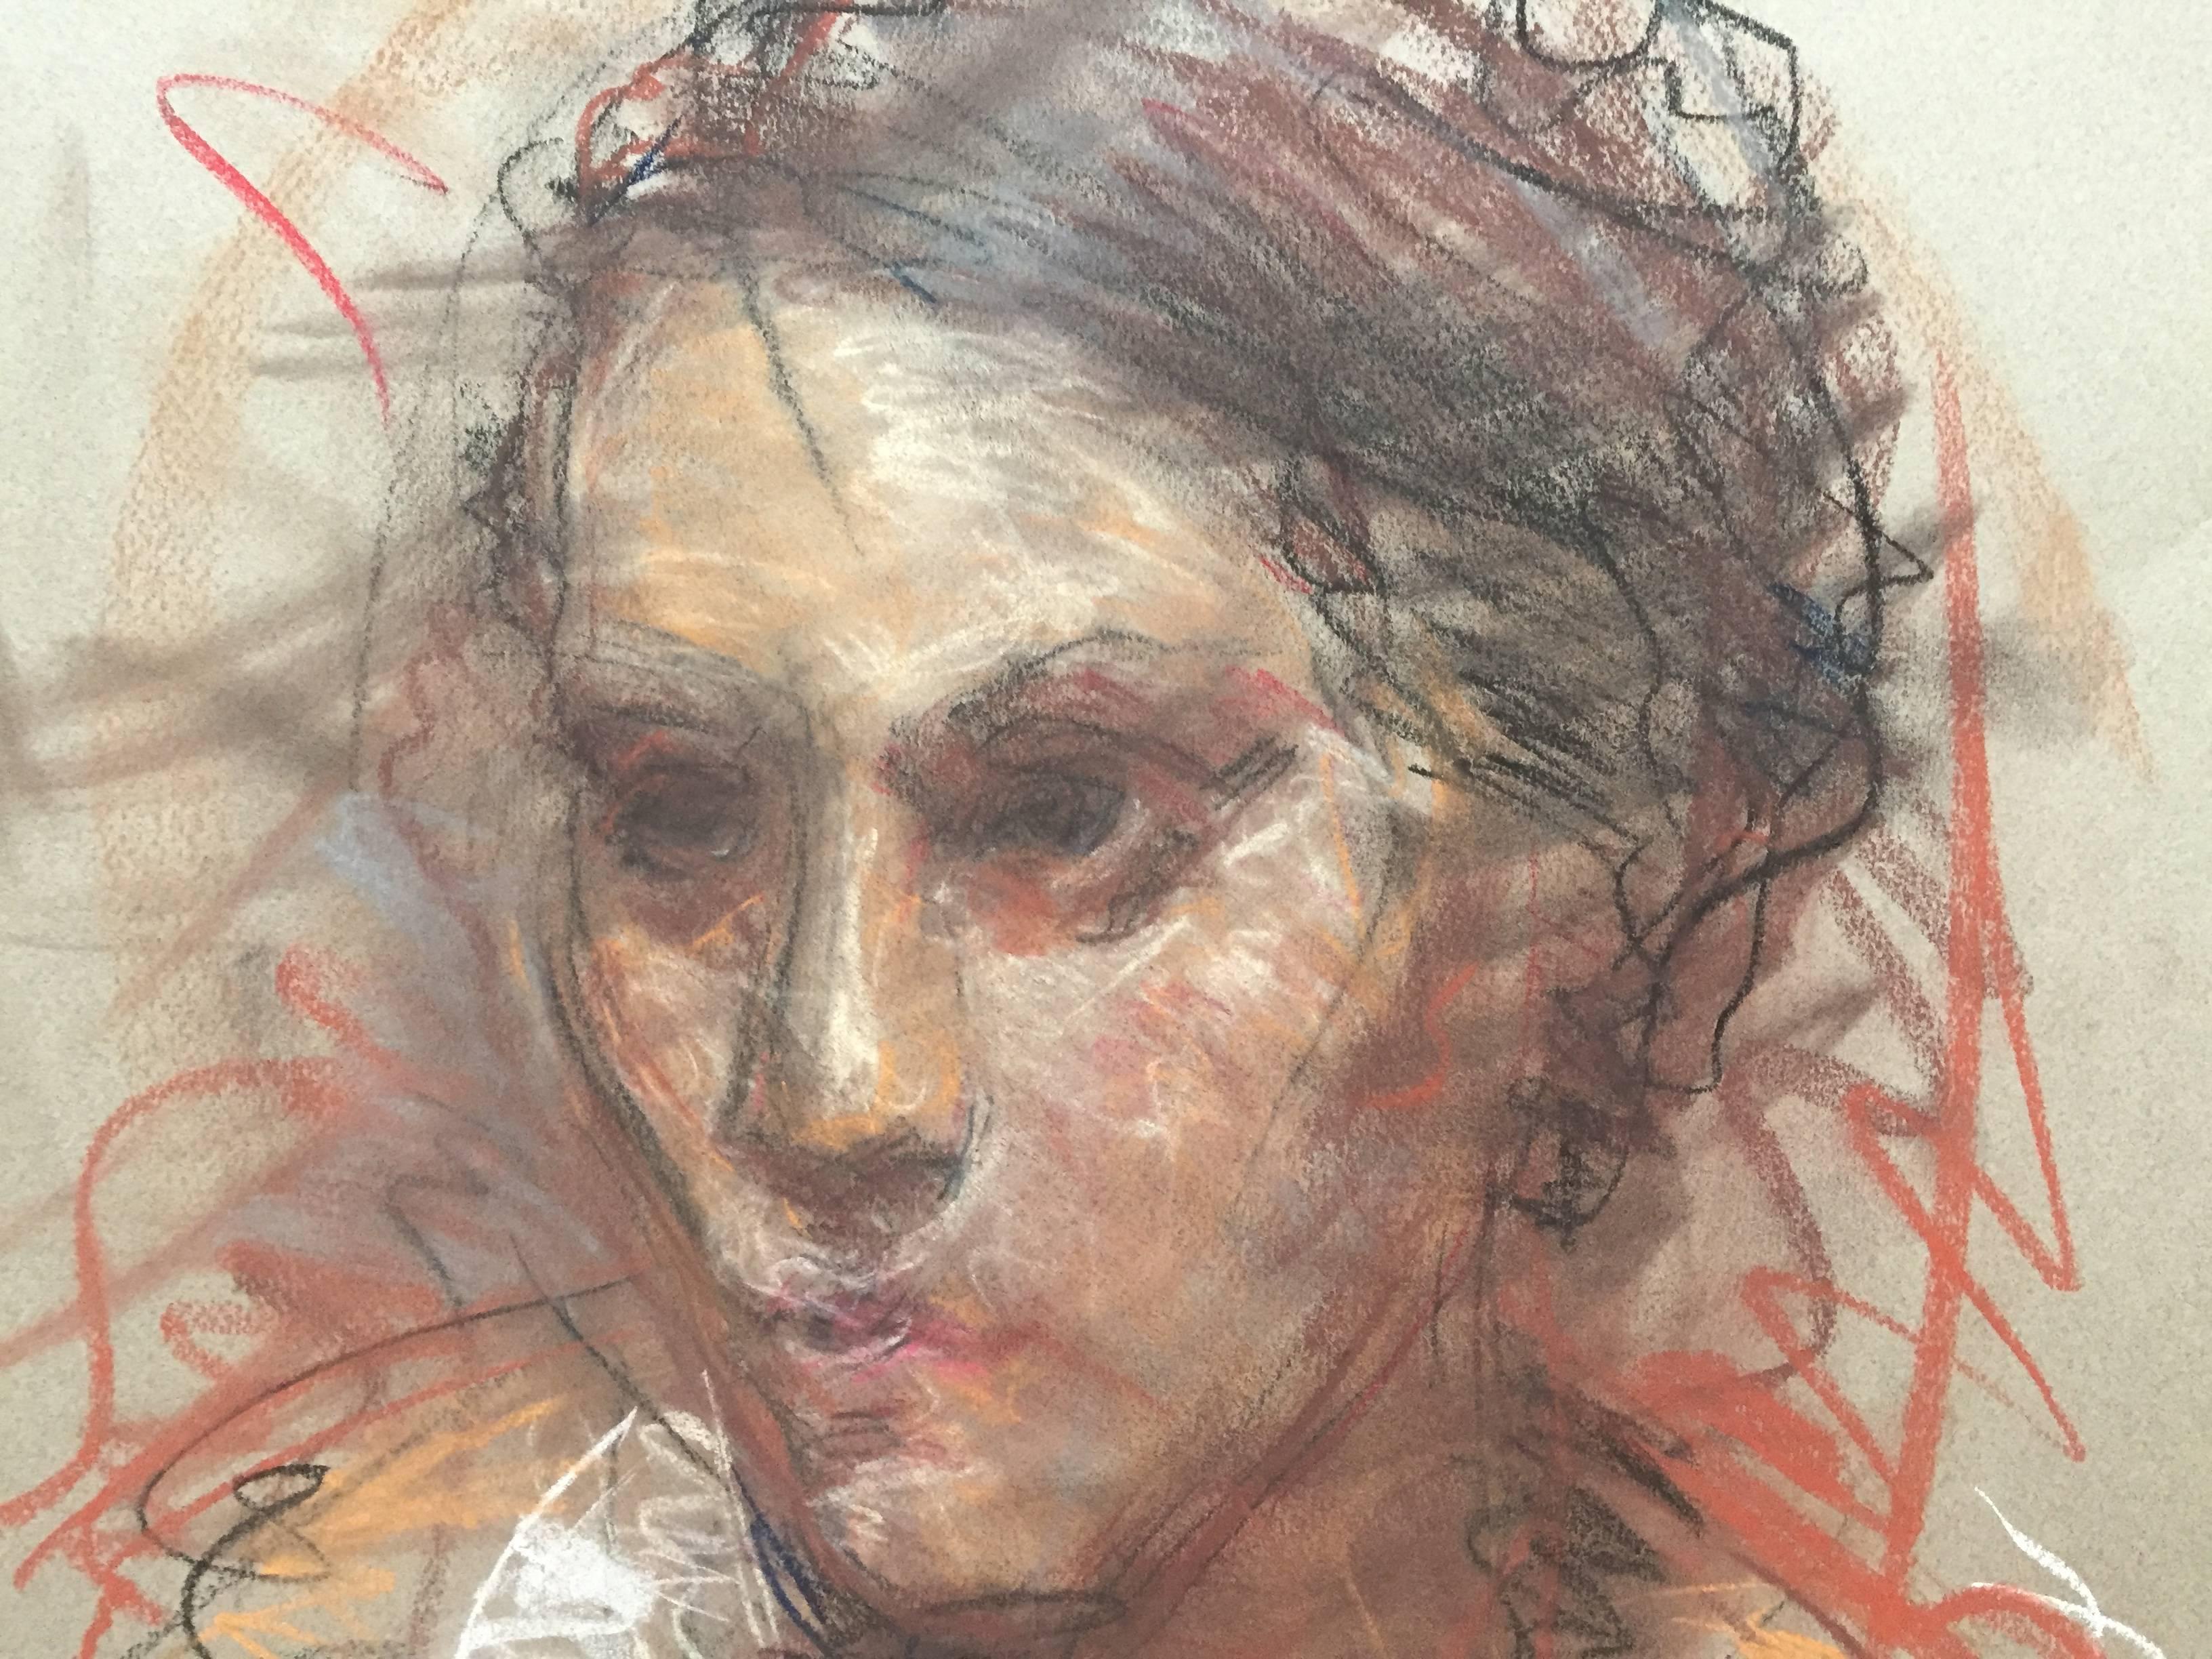 Female Portrait Sketch #2 - Academic Art by Ben Fenske